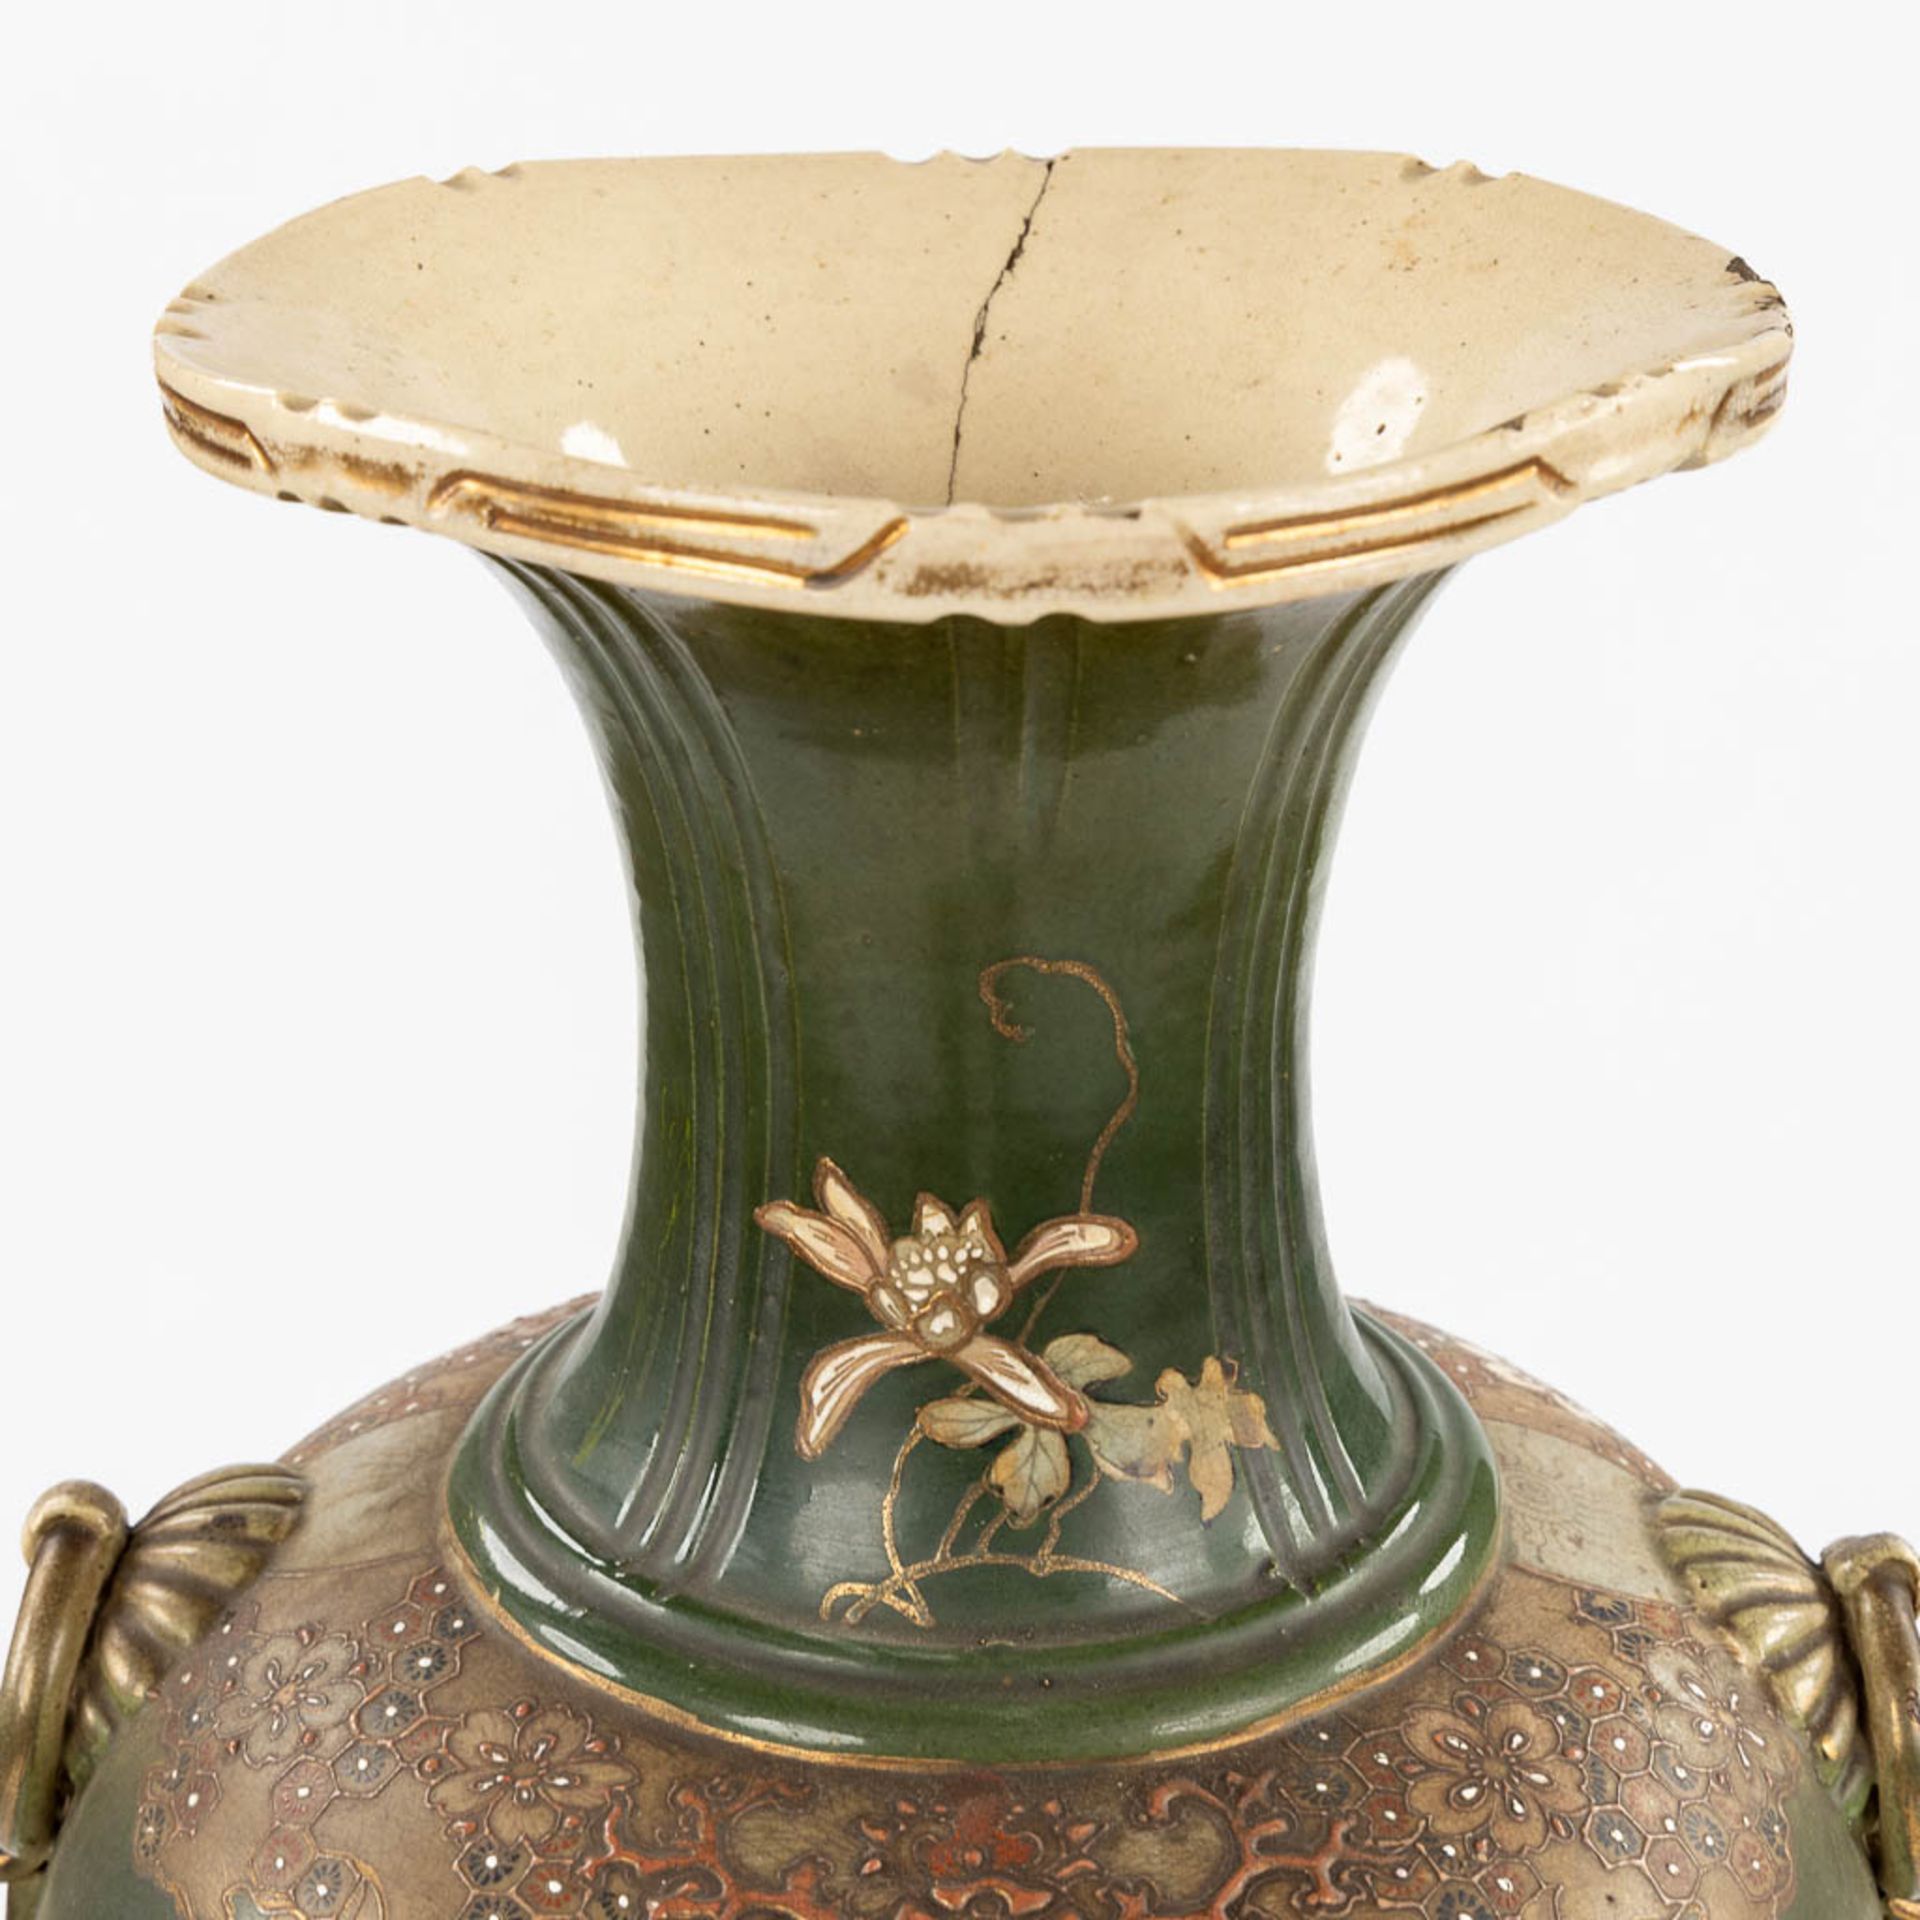 A decorative Japanese vase with Warrior scène. (H:89 x D:35 cm) - Image 6 of 9